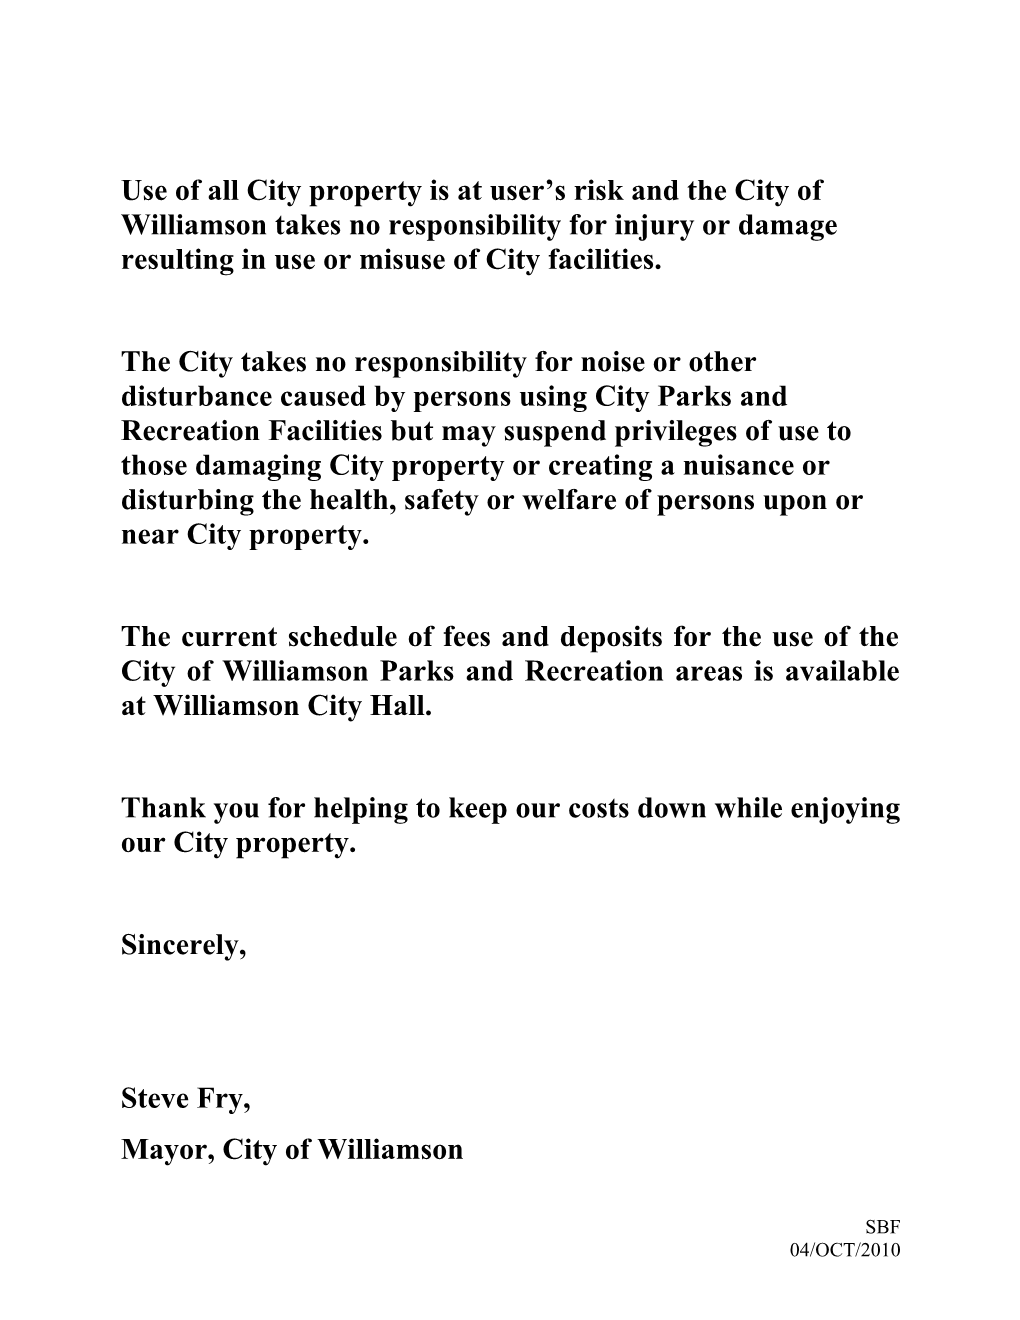 City of Williamson